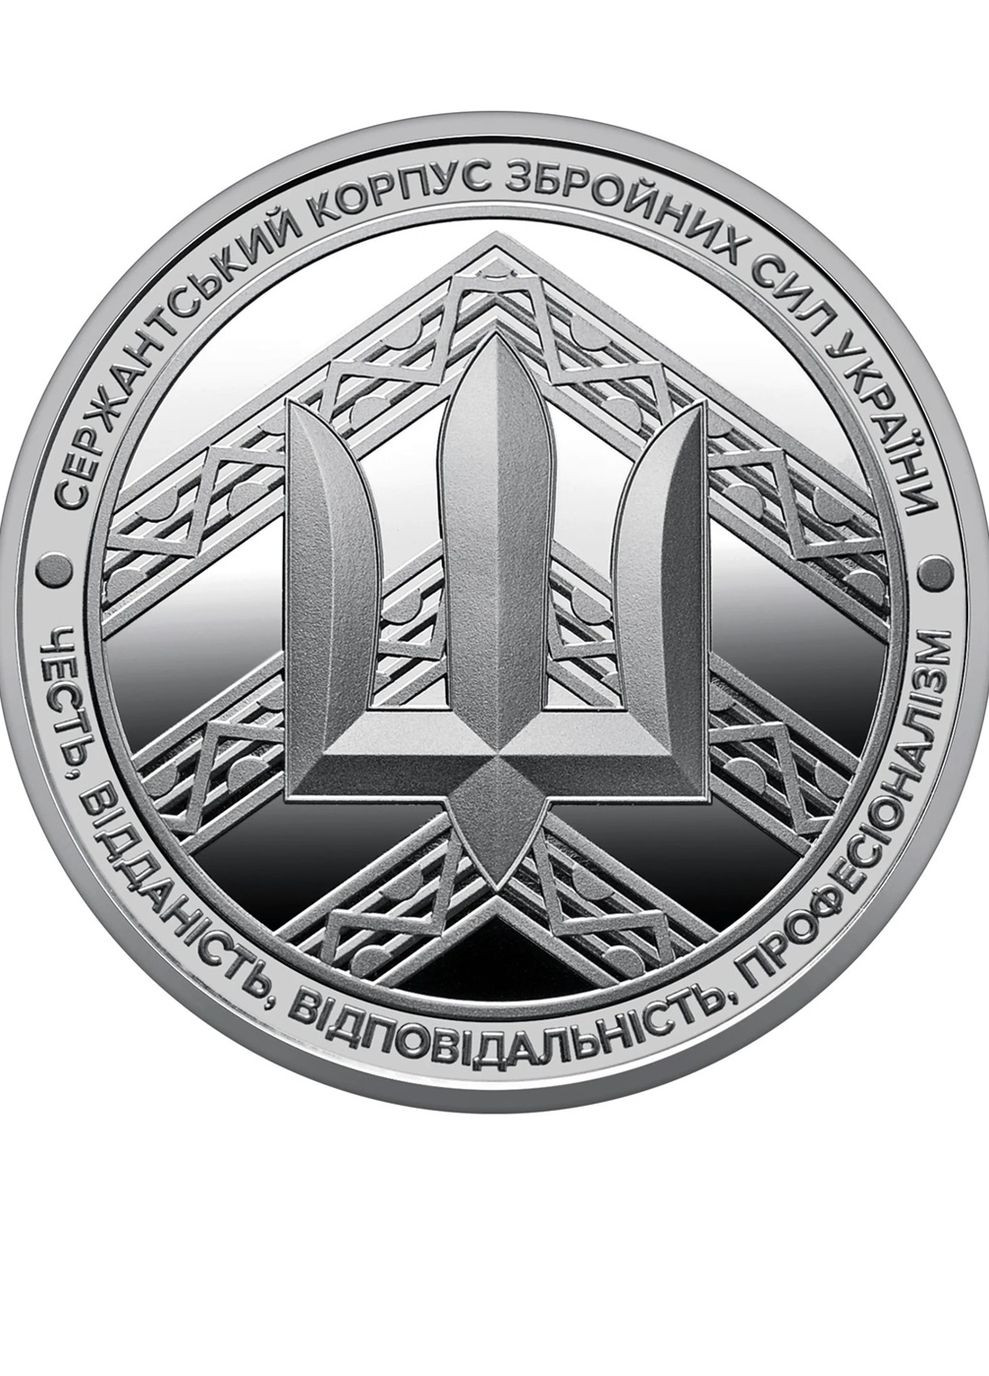 Медаль «Сержантский корпус» НБУ 2023 Blue Orange (271286260)